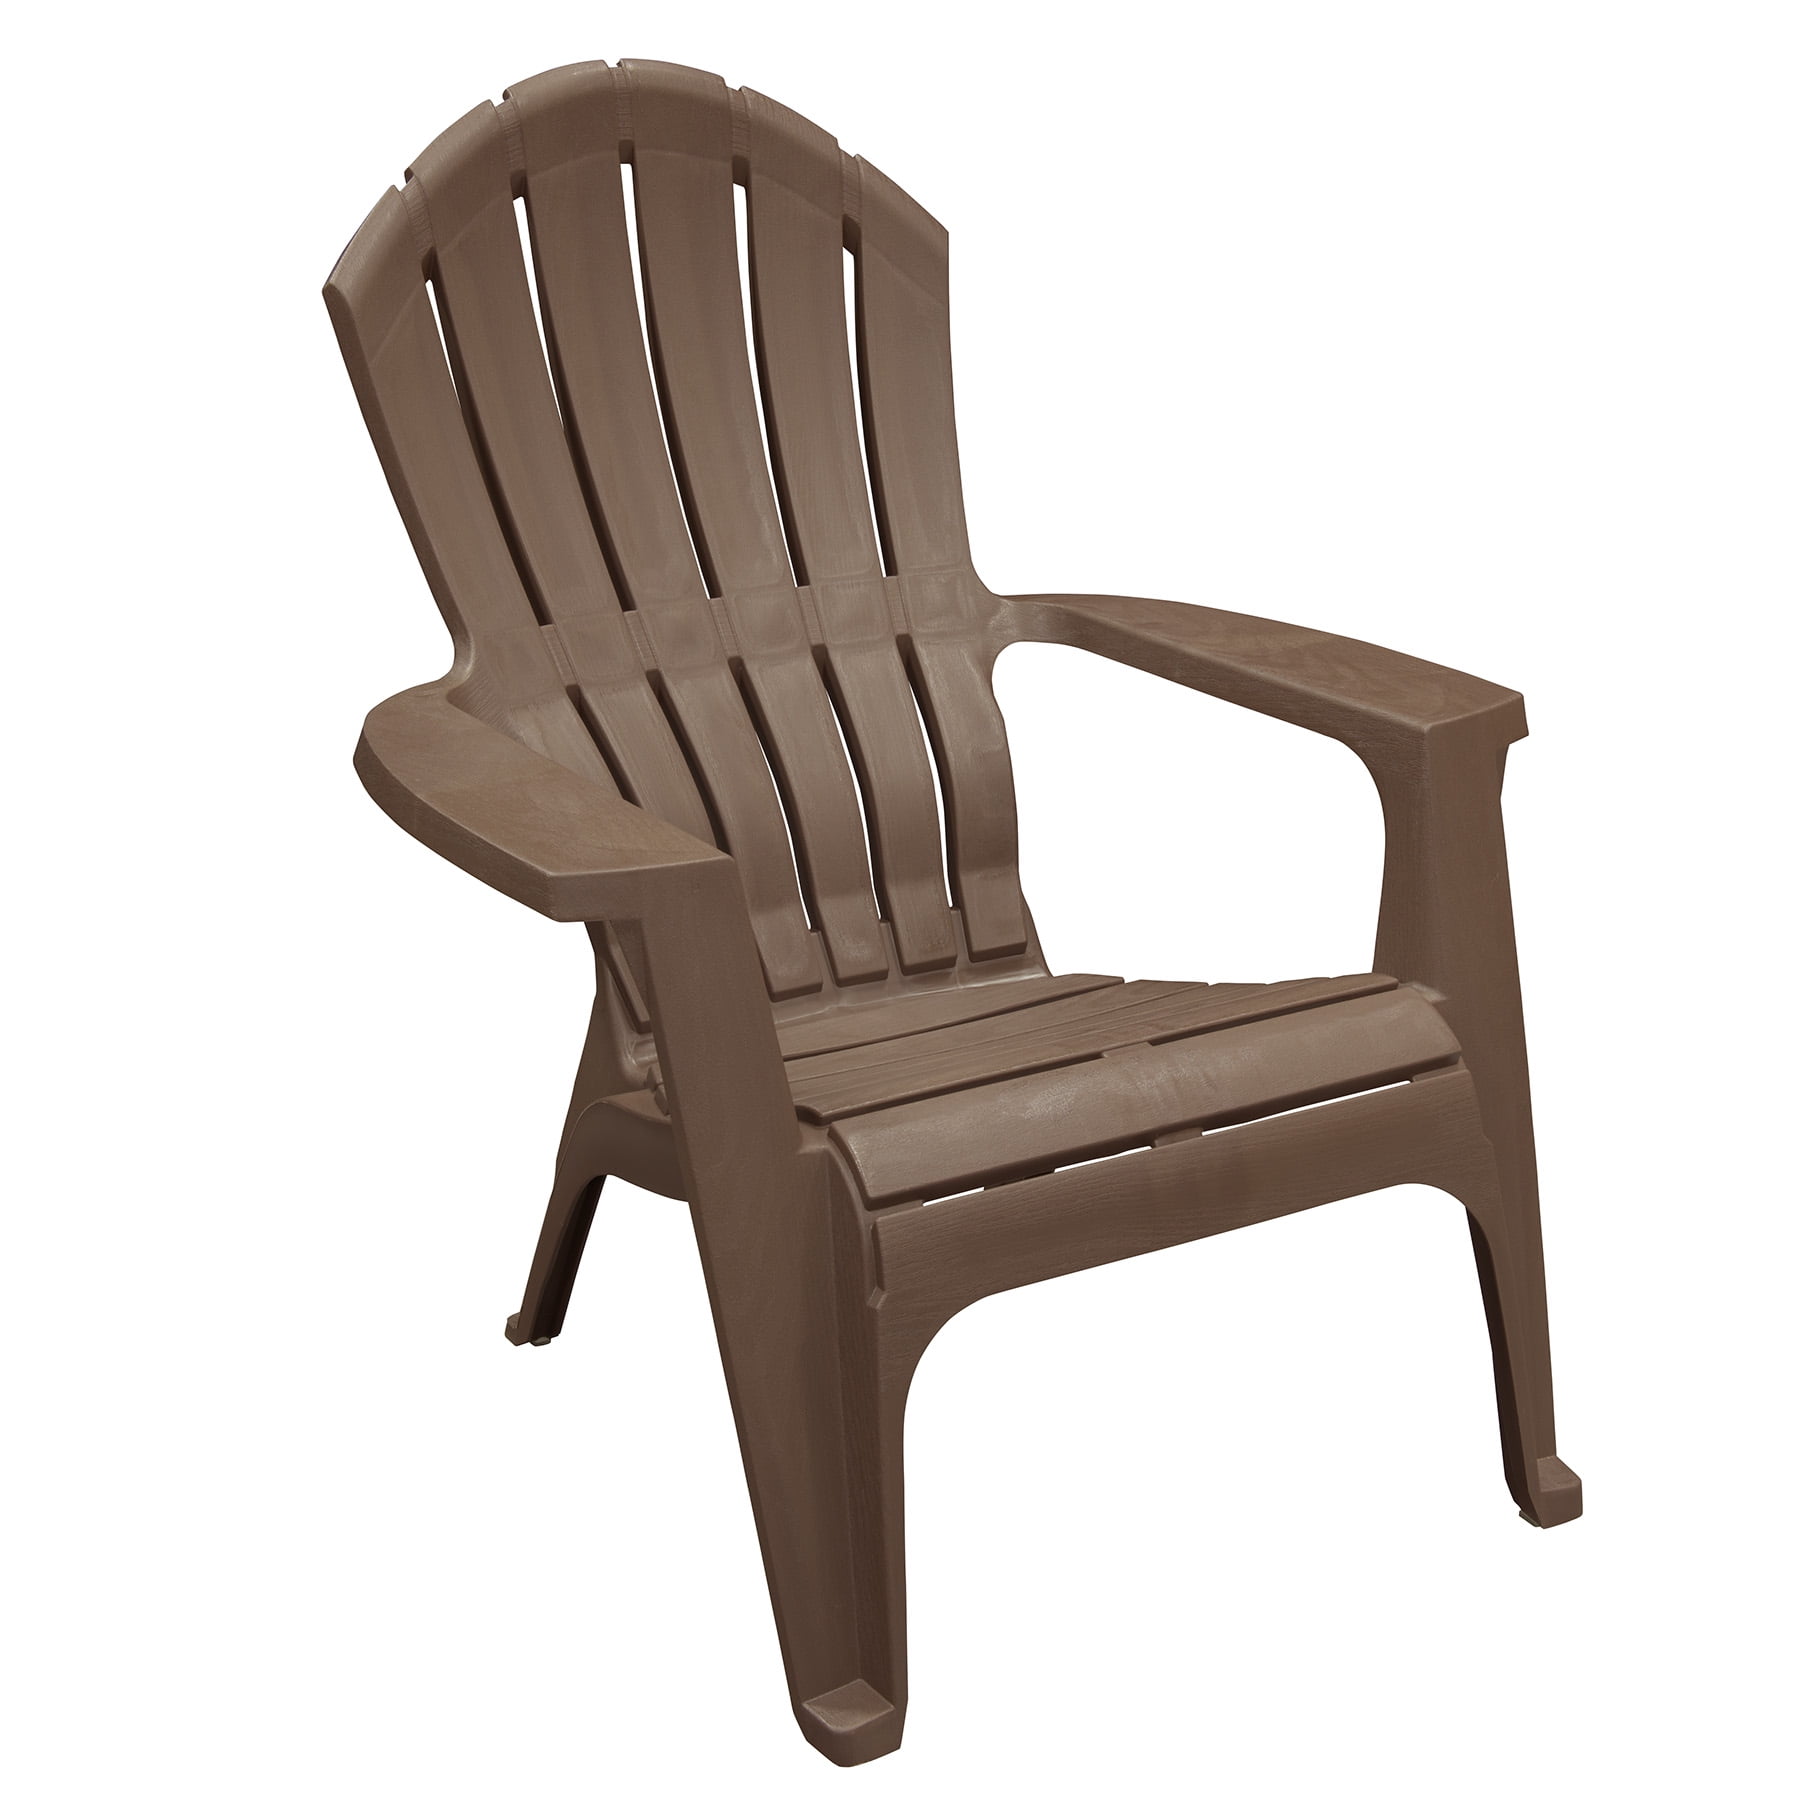 Adams Adirondack Real Comfort Plastic Chair, Earth Brown